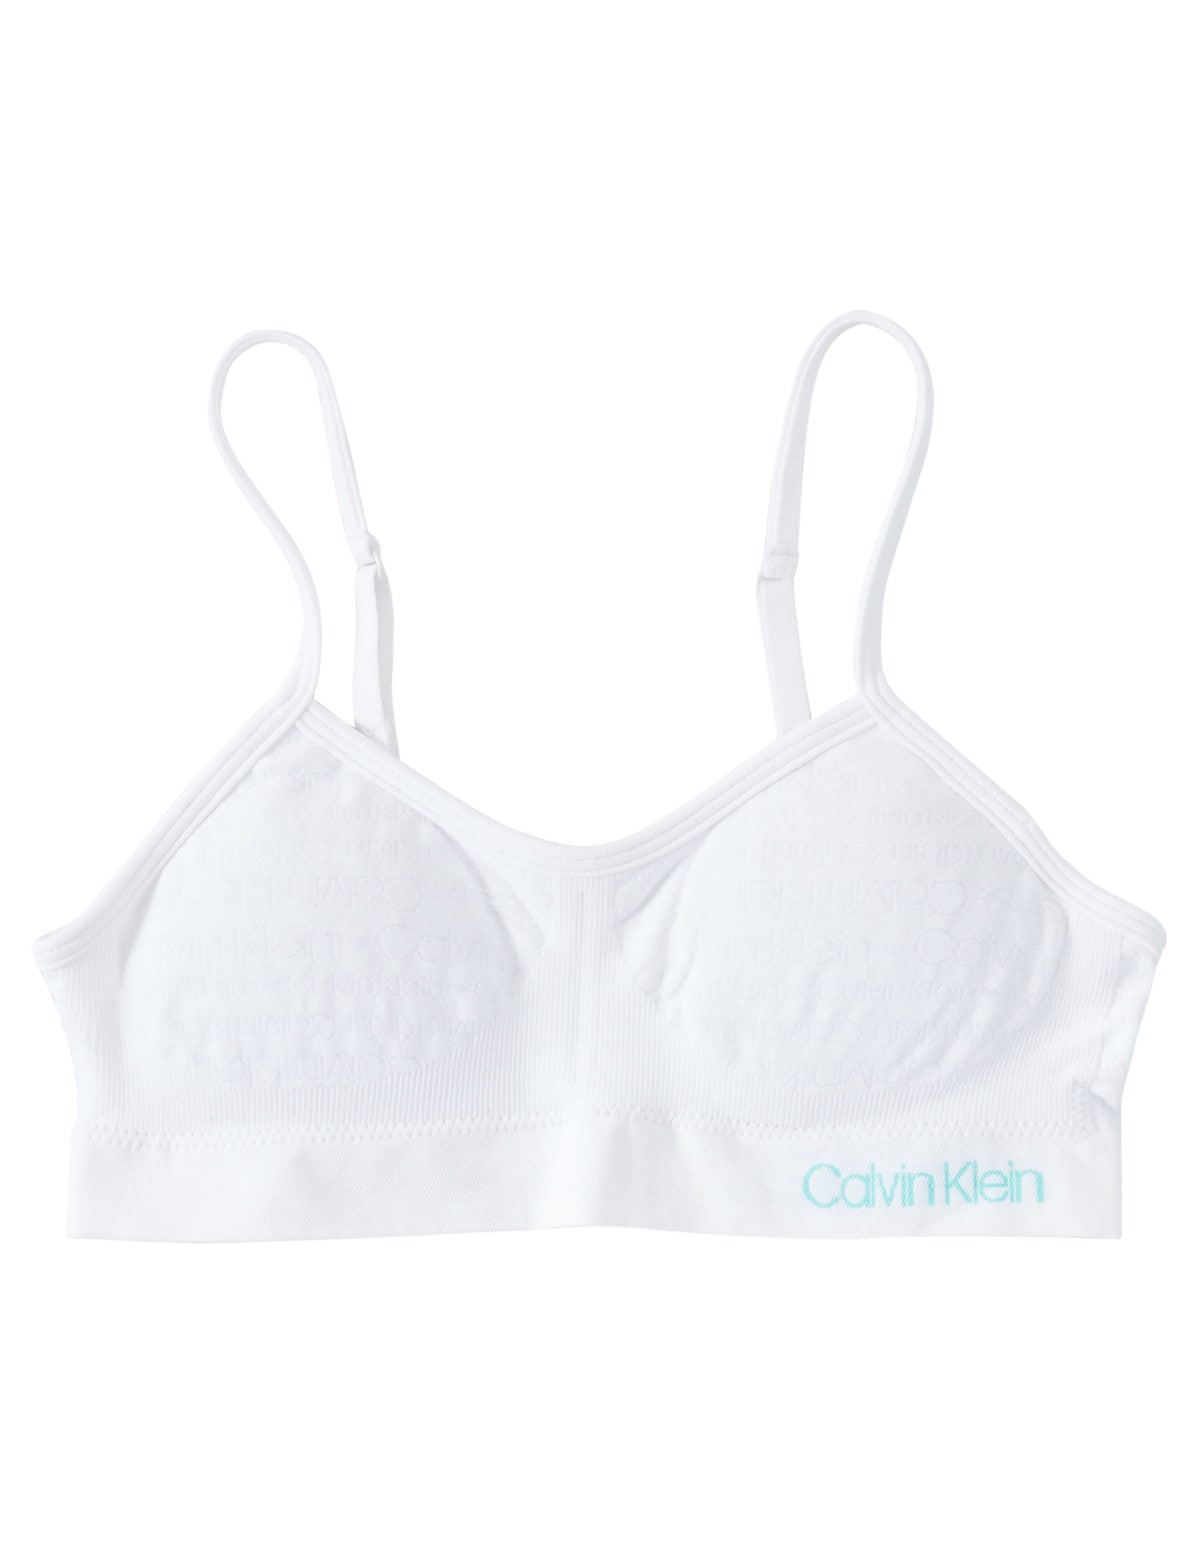 Calvin Klein Logo Bralette, White - Underwear